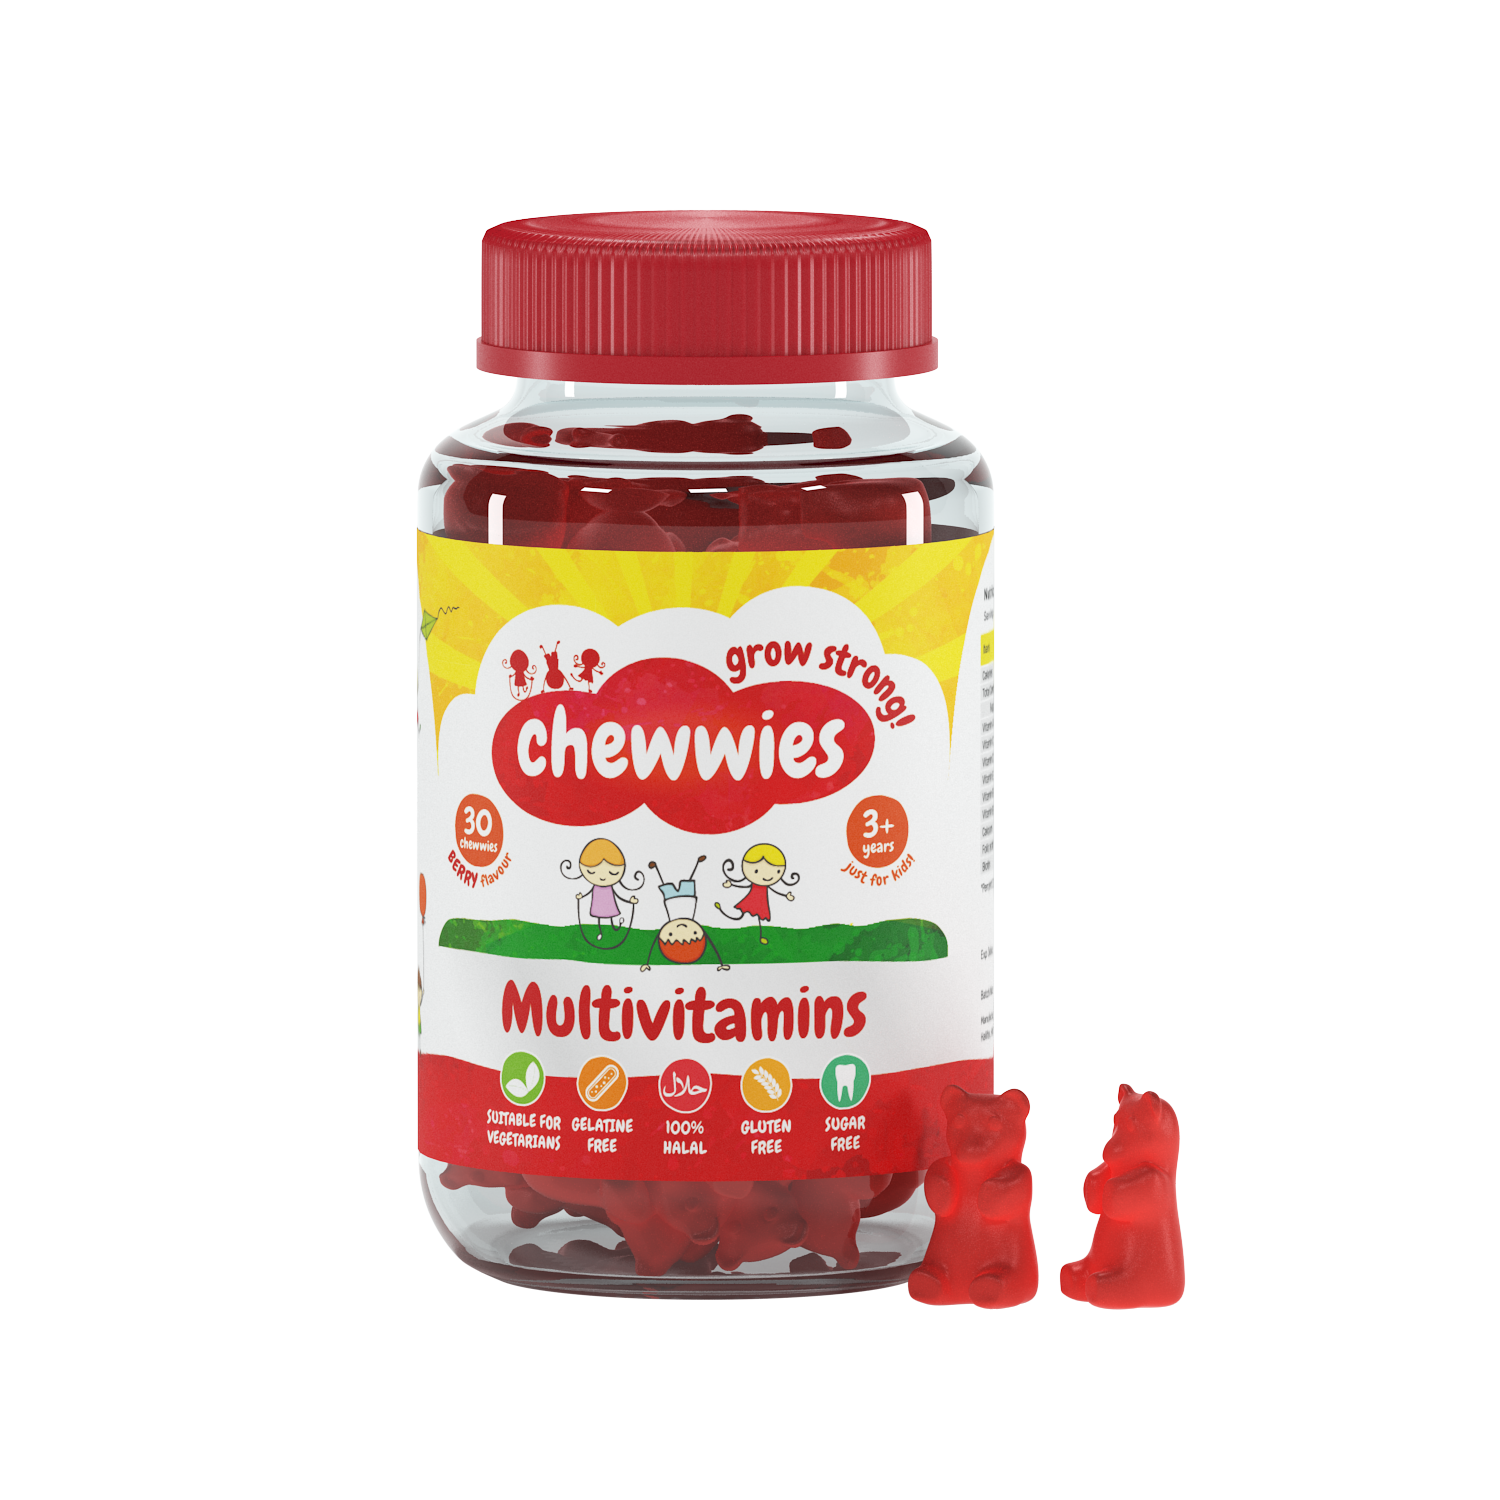 Chewwies Multivitamins and micronutrients in 30 vegan gummies, UK's no. 1 gelatine-free & sugar-free (essential) vitamin